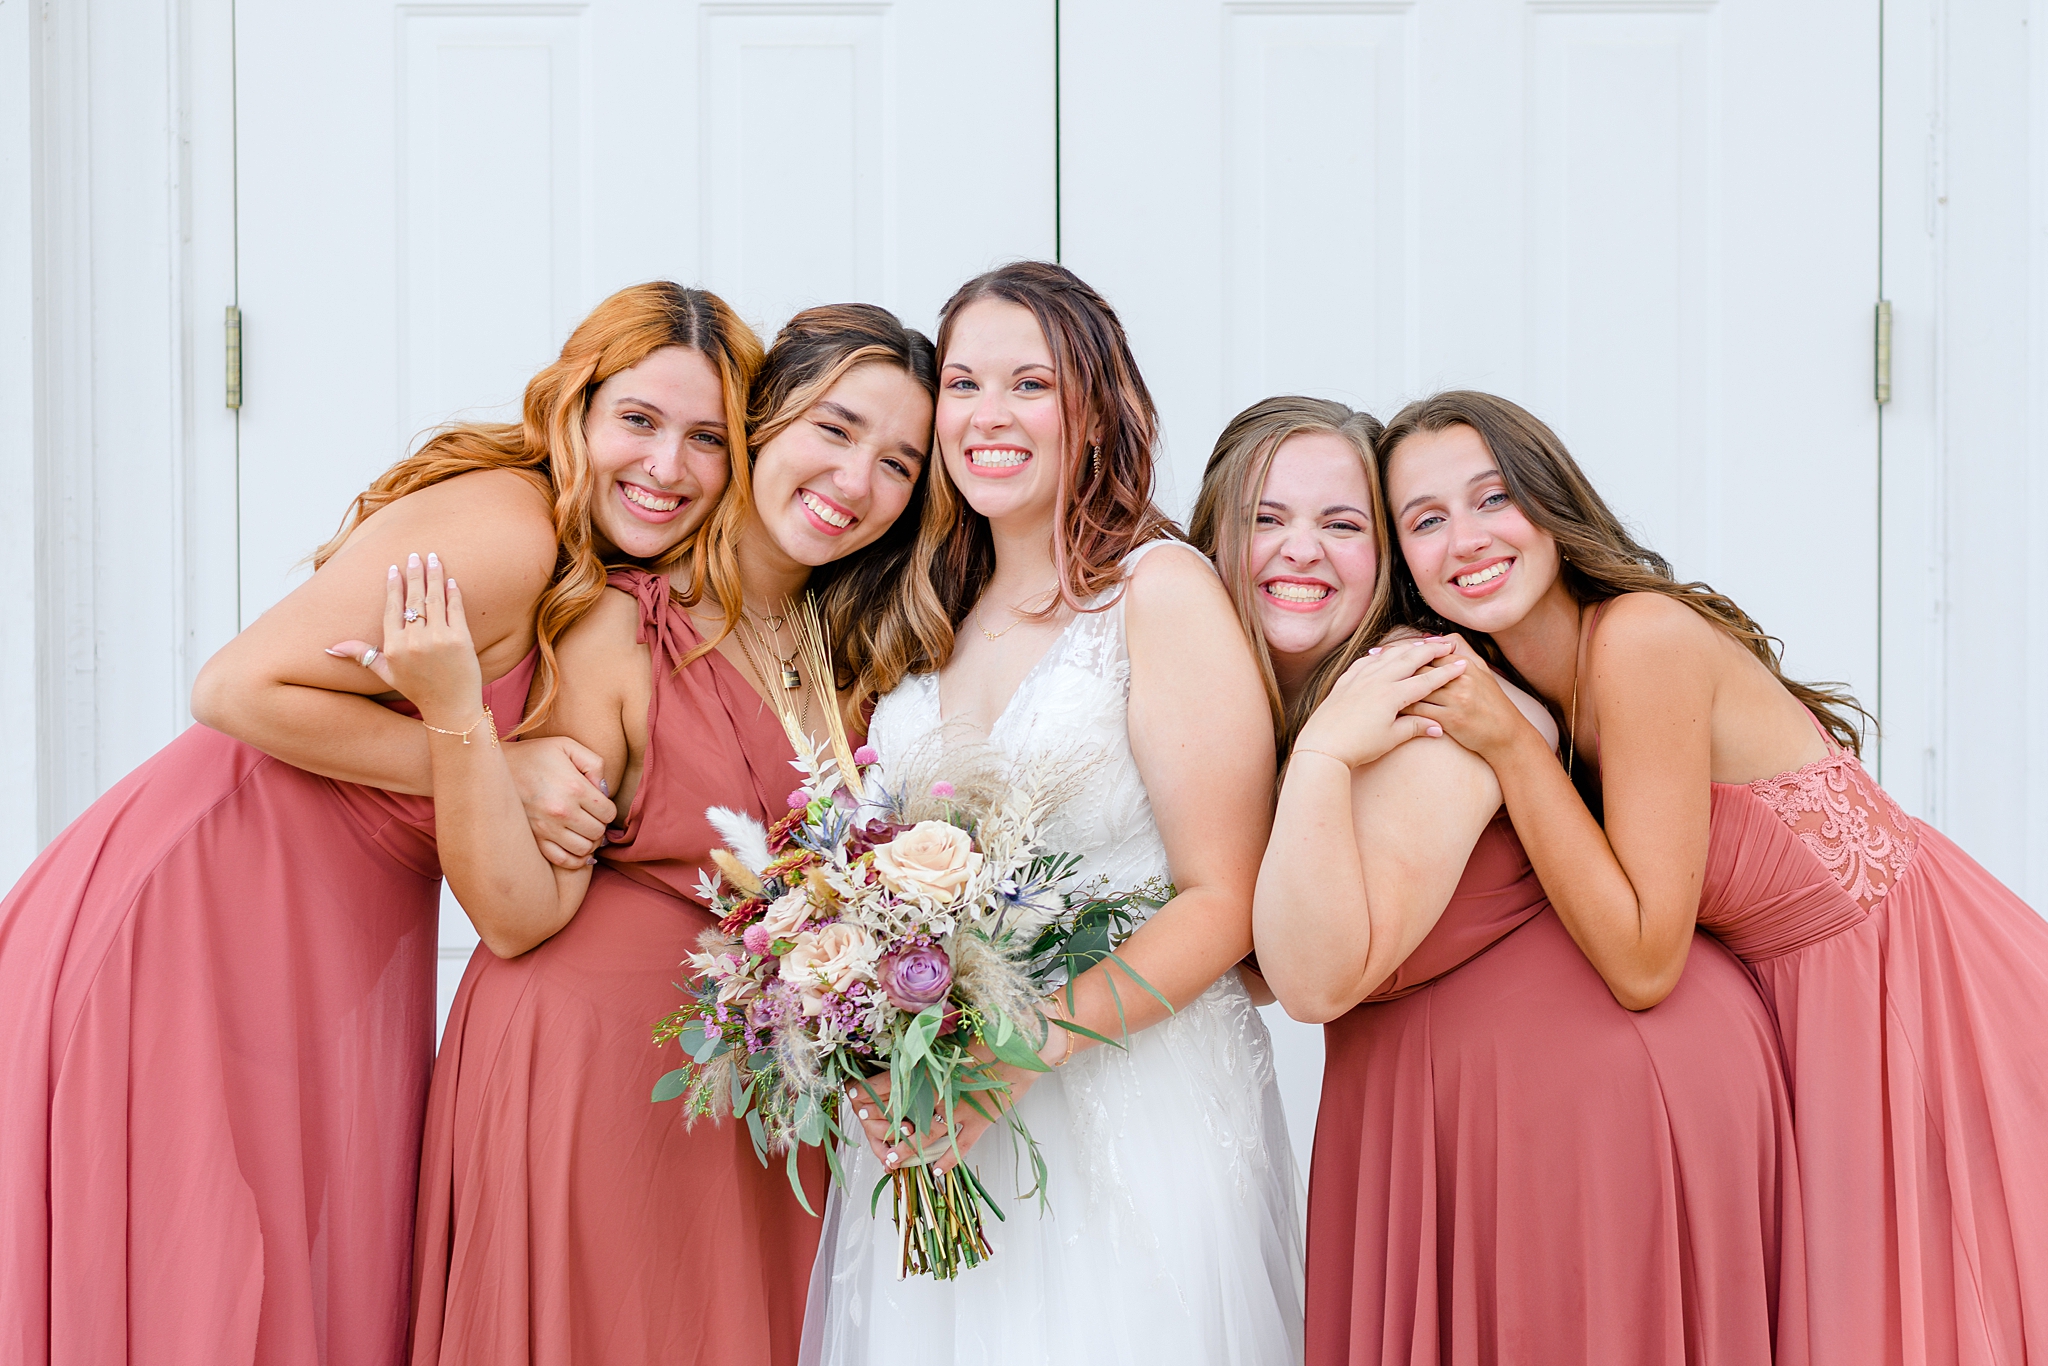 sweet bridesmaids photos